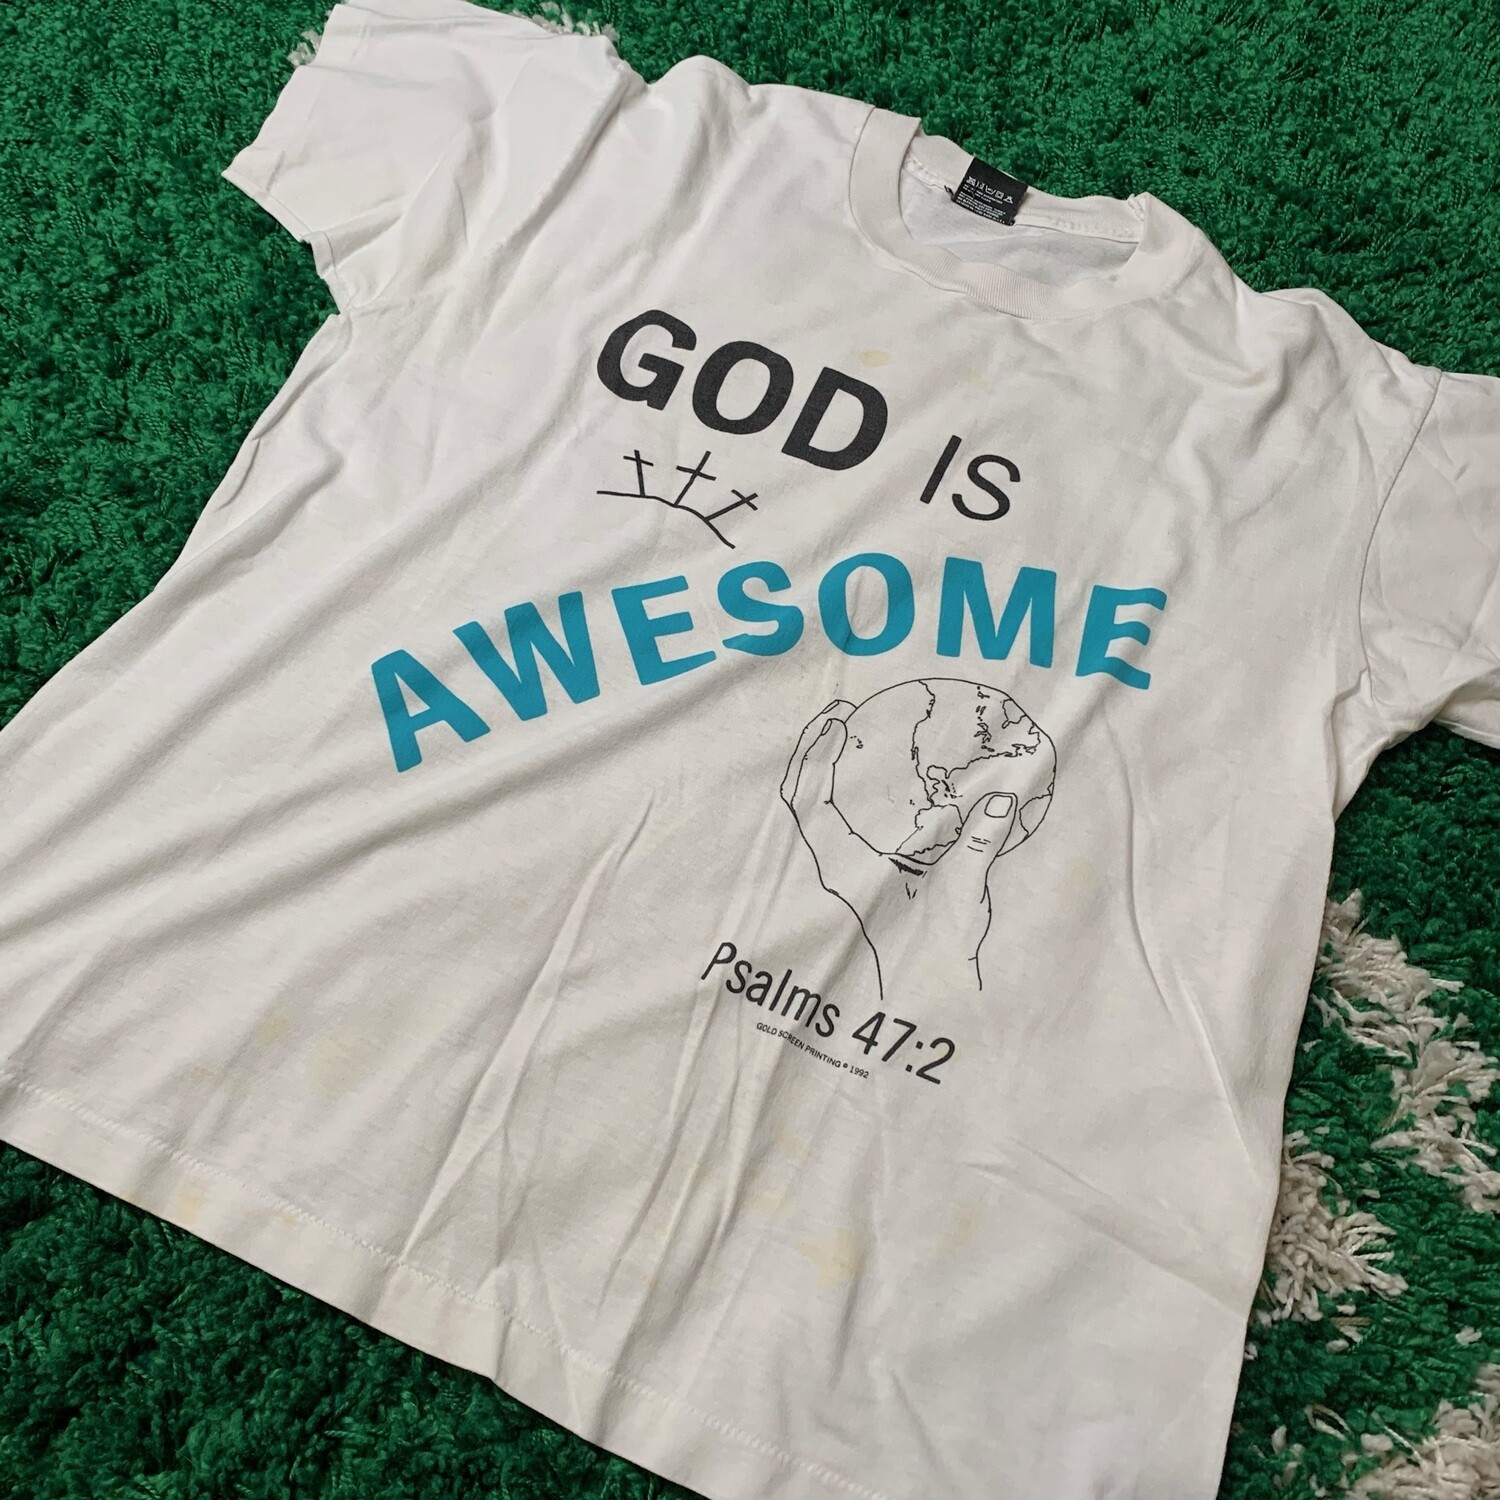 God is Awesome Psalms 47:2 1992 Shirt Size Medium